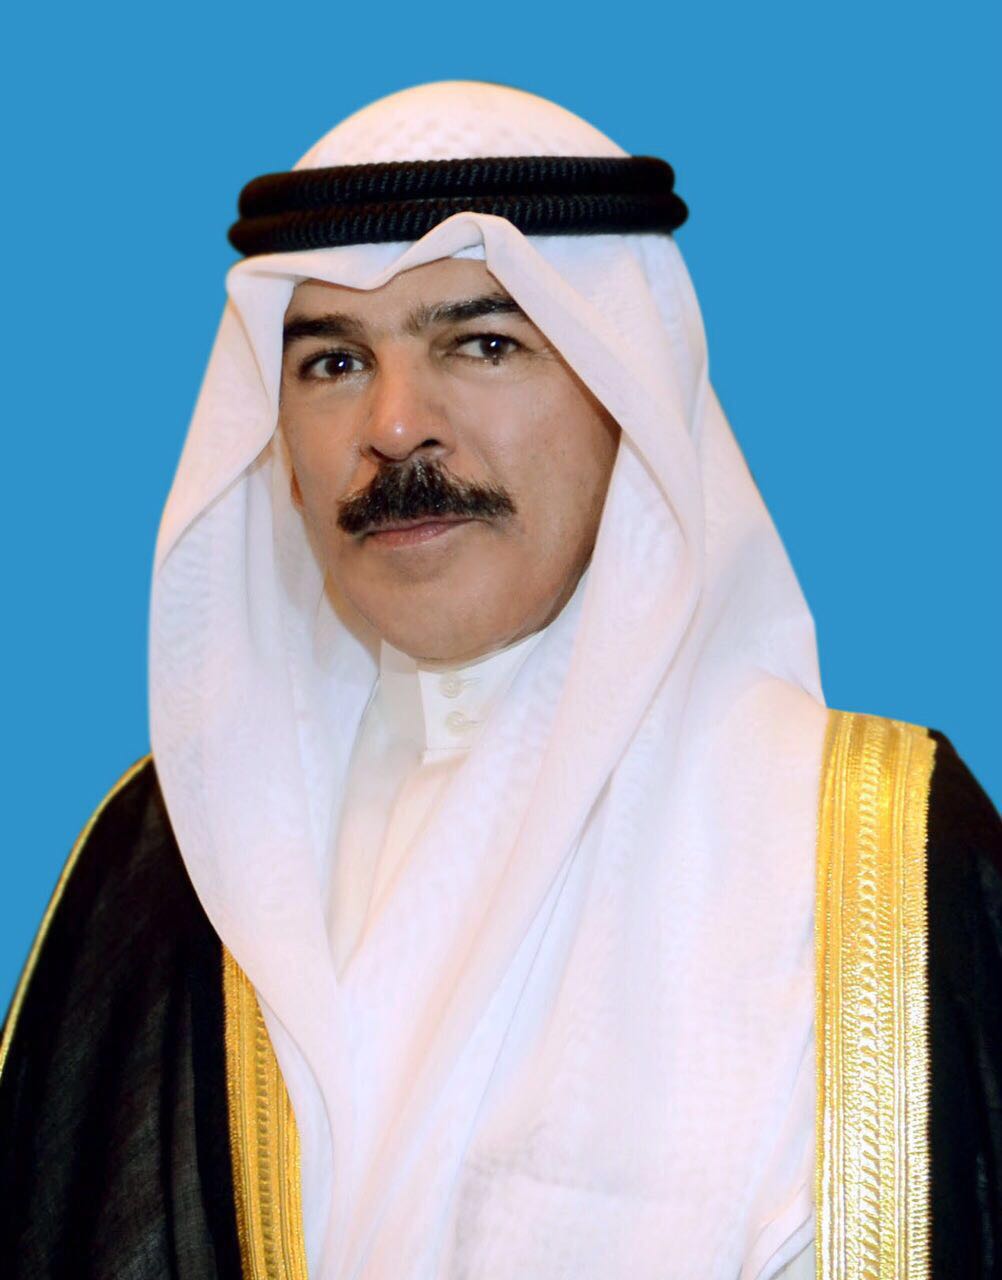 معالي نائب رئيس مجلس الوزراء ووزير الدفاع الشيخ محمد الخالد الحمد الصباح